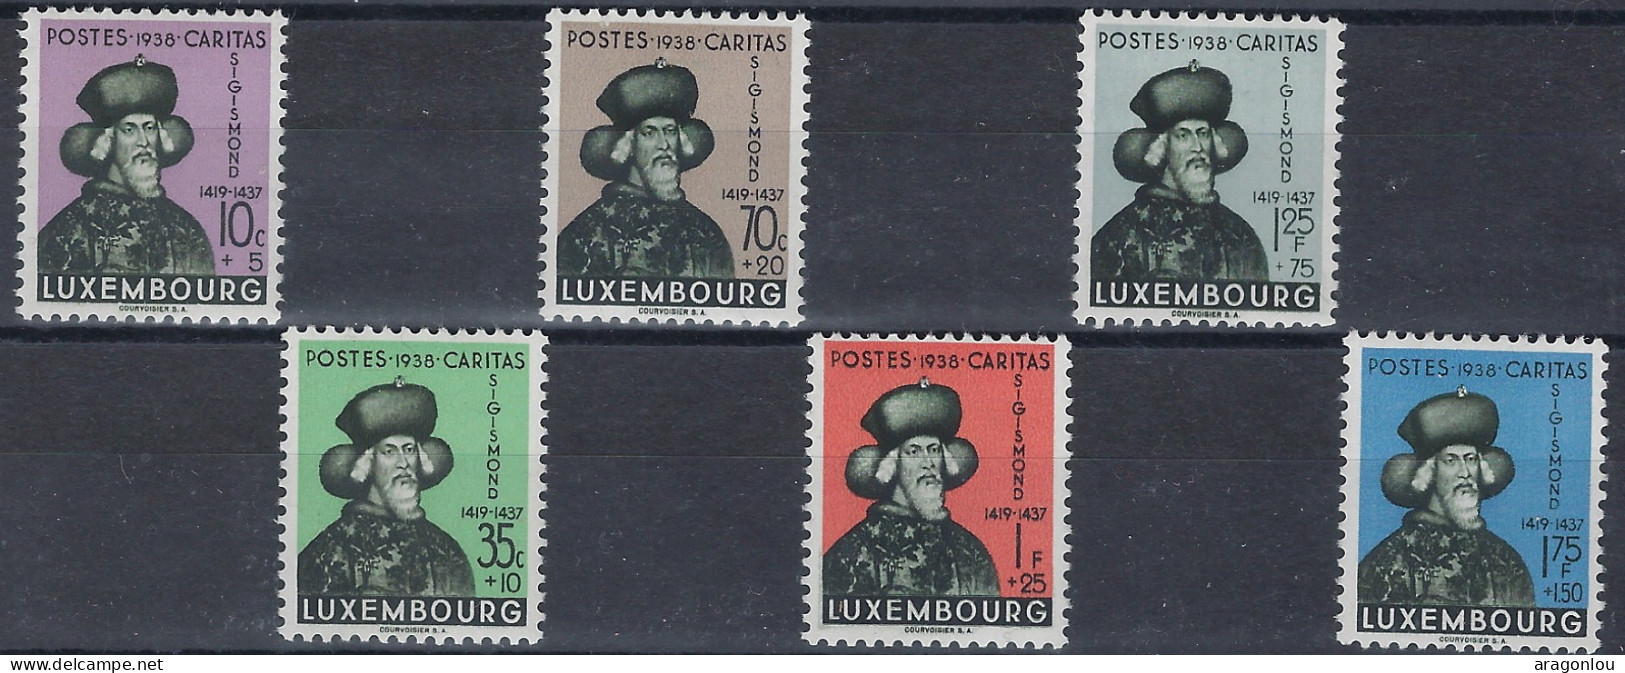 Luxembourg - Luxemburg - Timbres - Sigismund  1938  Série  * - Oblitérés